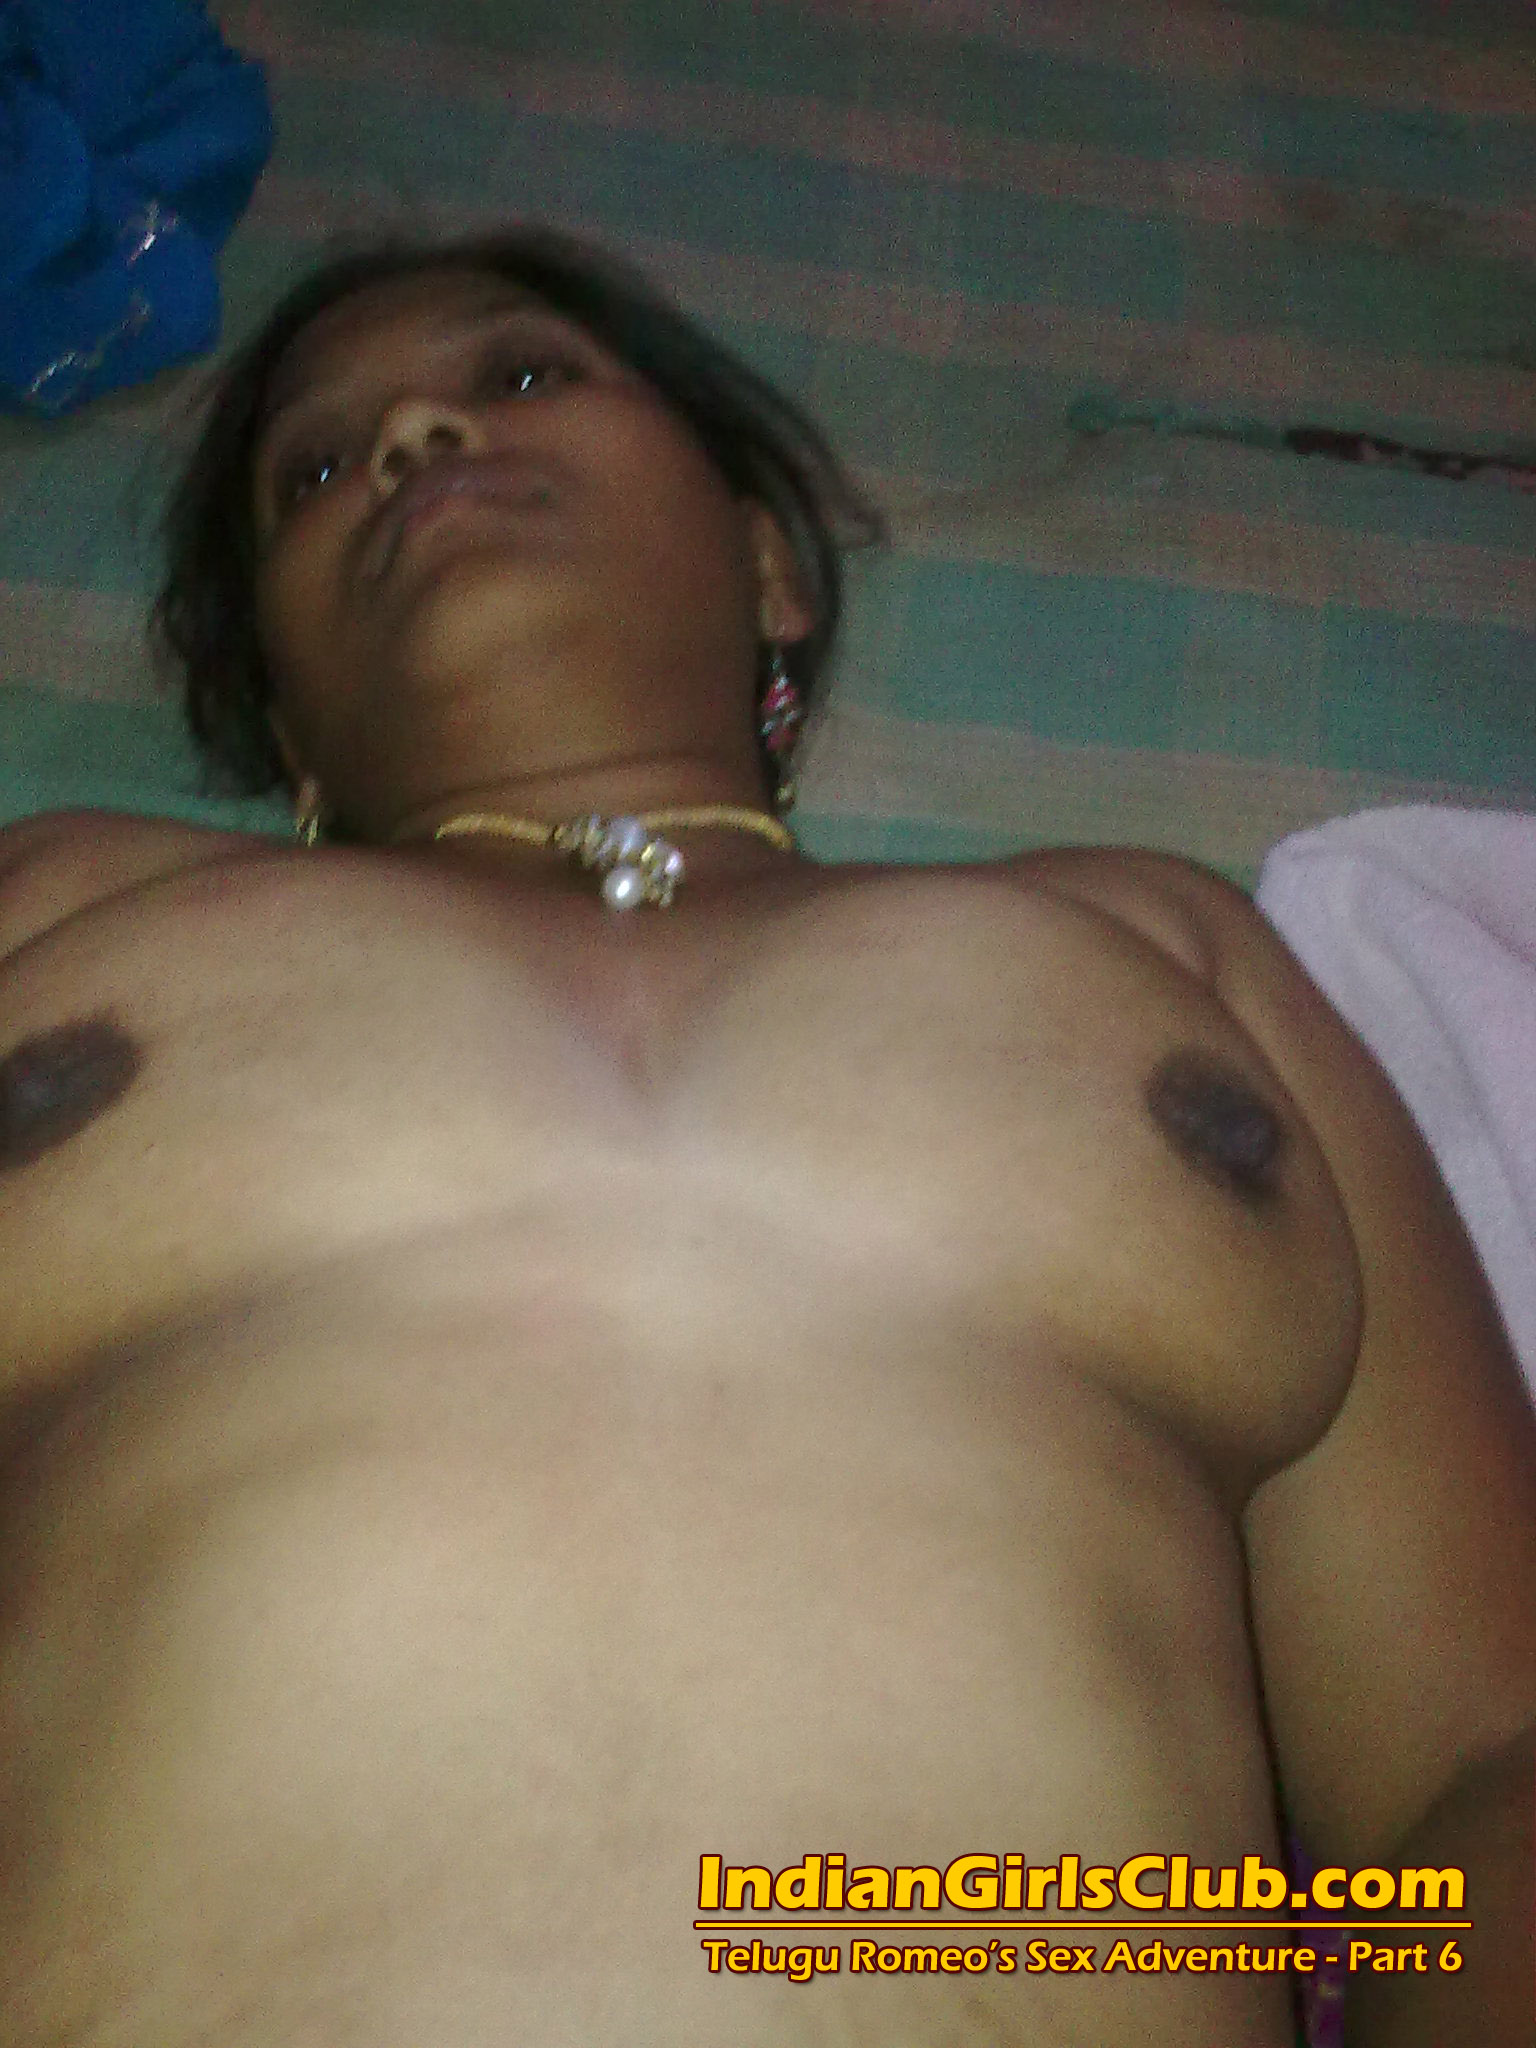 Andhra girls nude photos